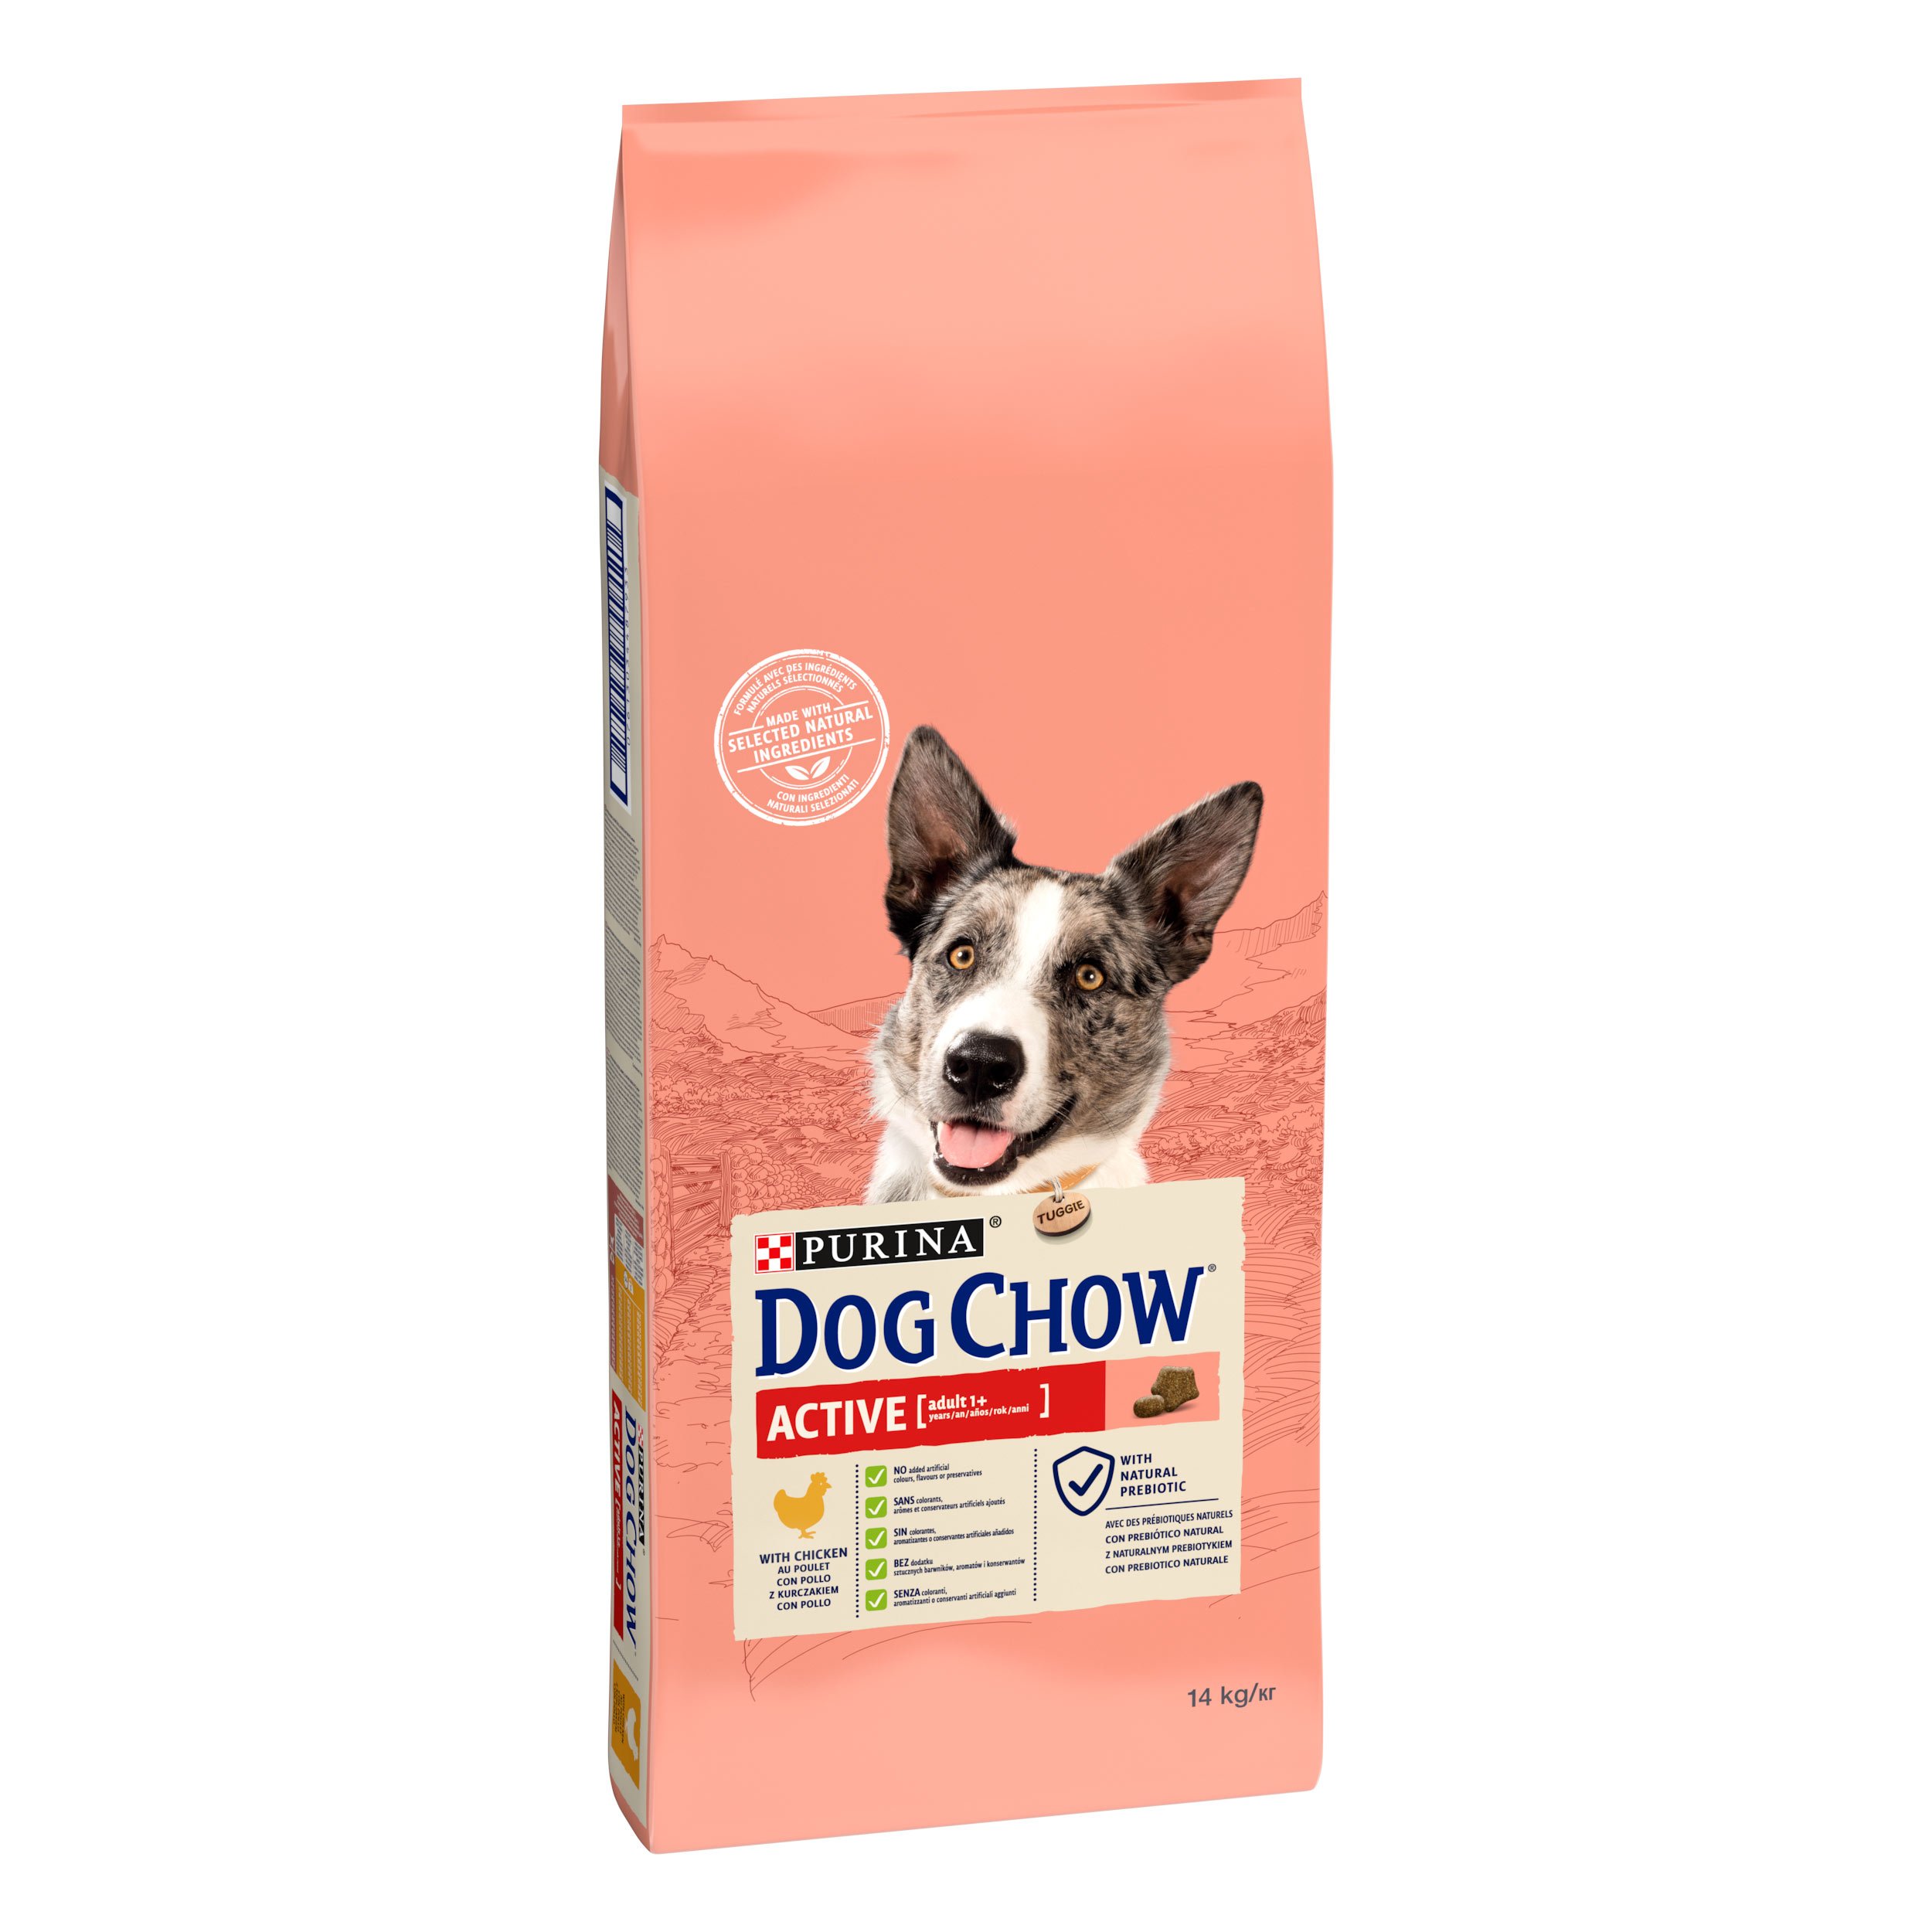 Сухой корм для собак с повышенной активностью Dog Chow Active Adult 1+, с курицей, 14 кг - фото 2